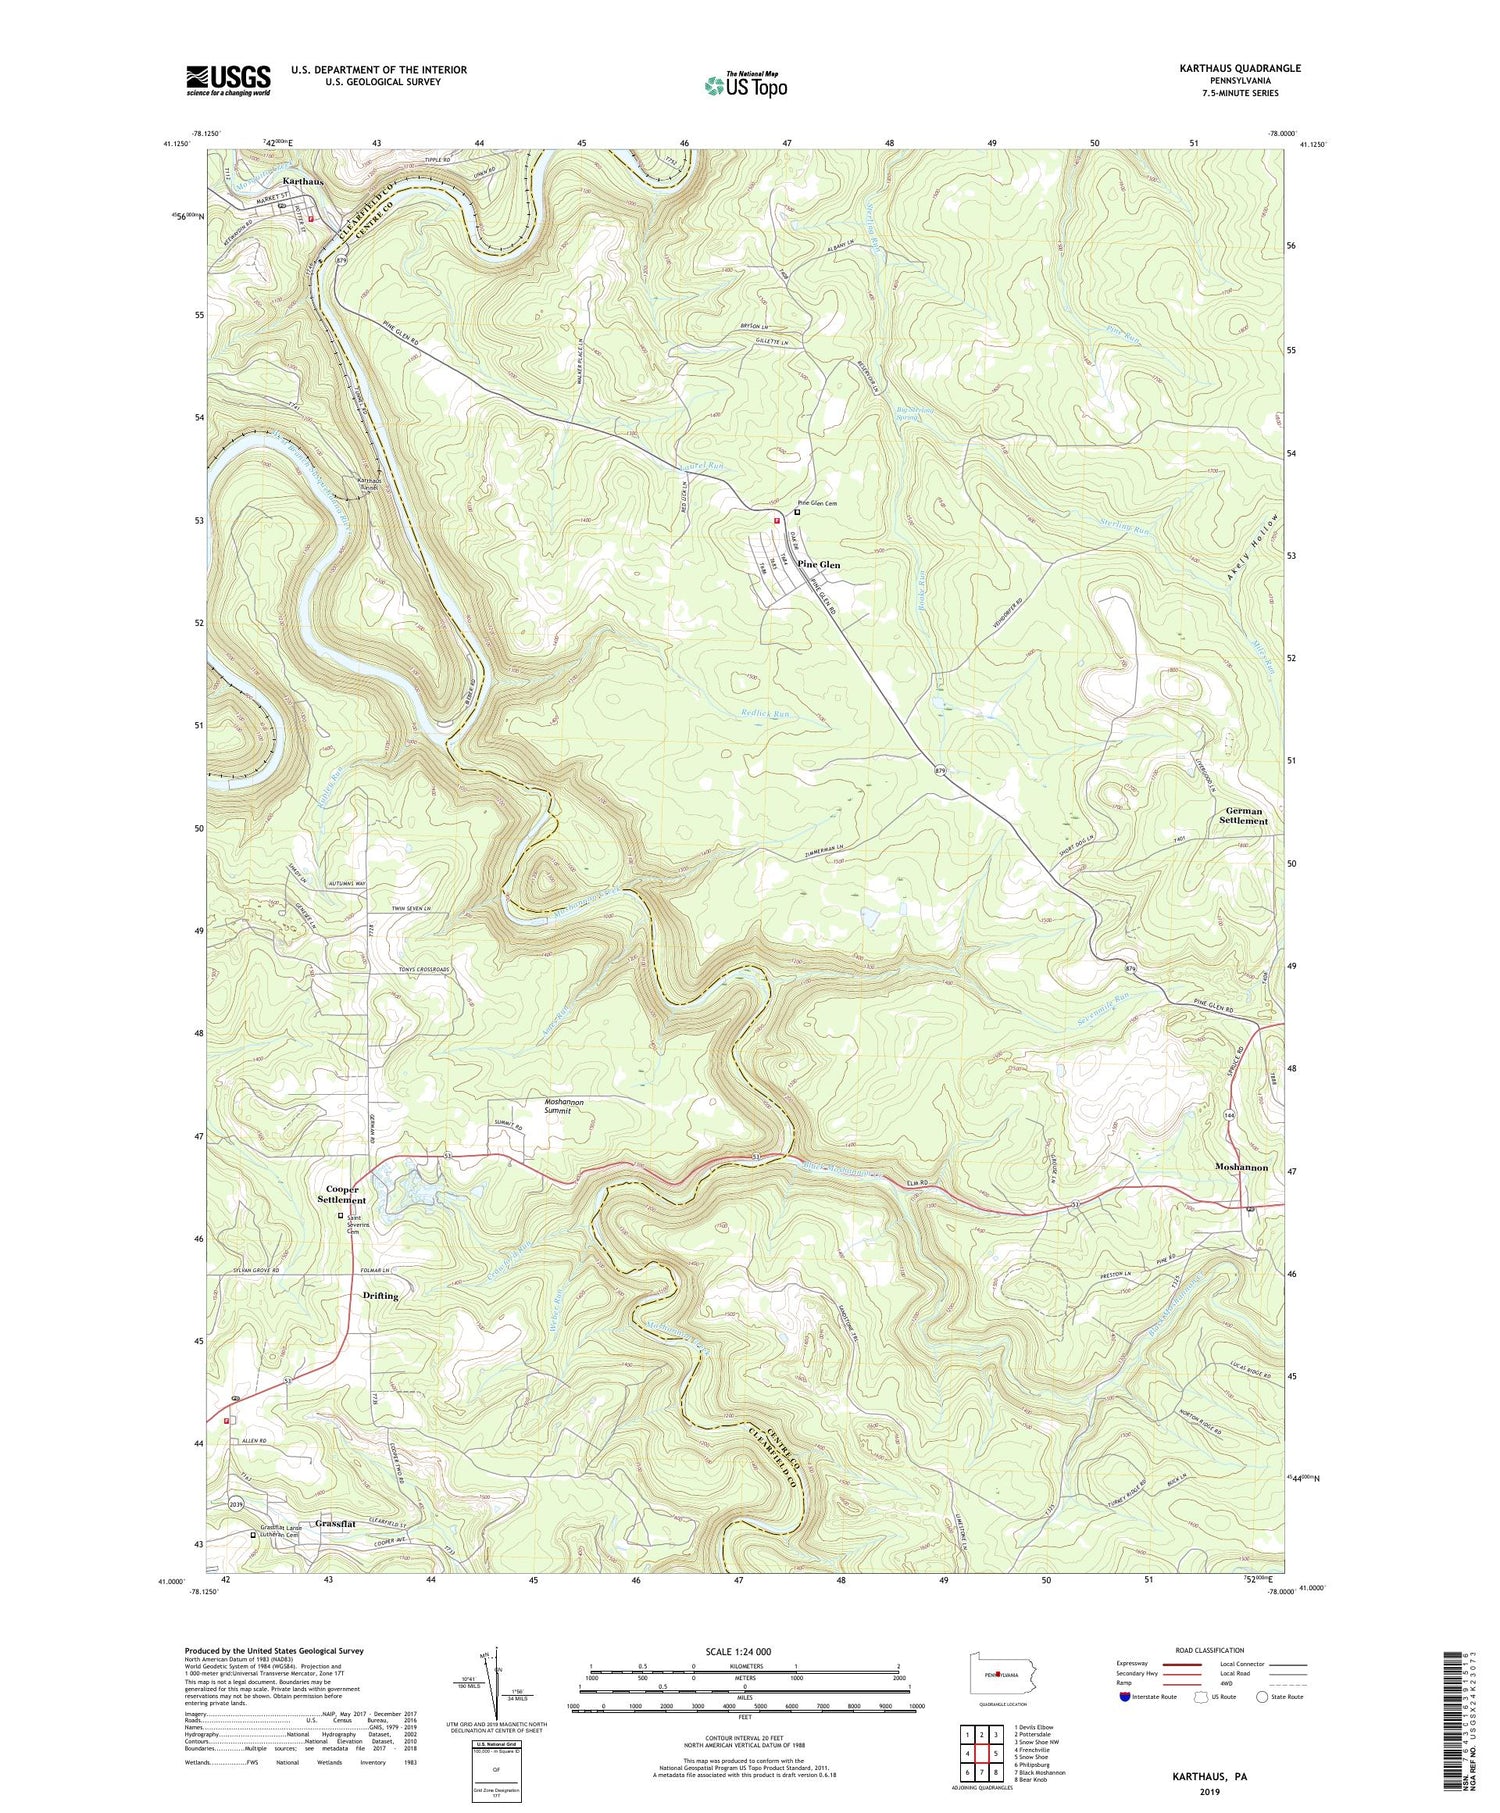 Karthaus Pennsylvania US Topo Map Image